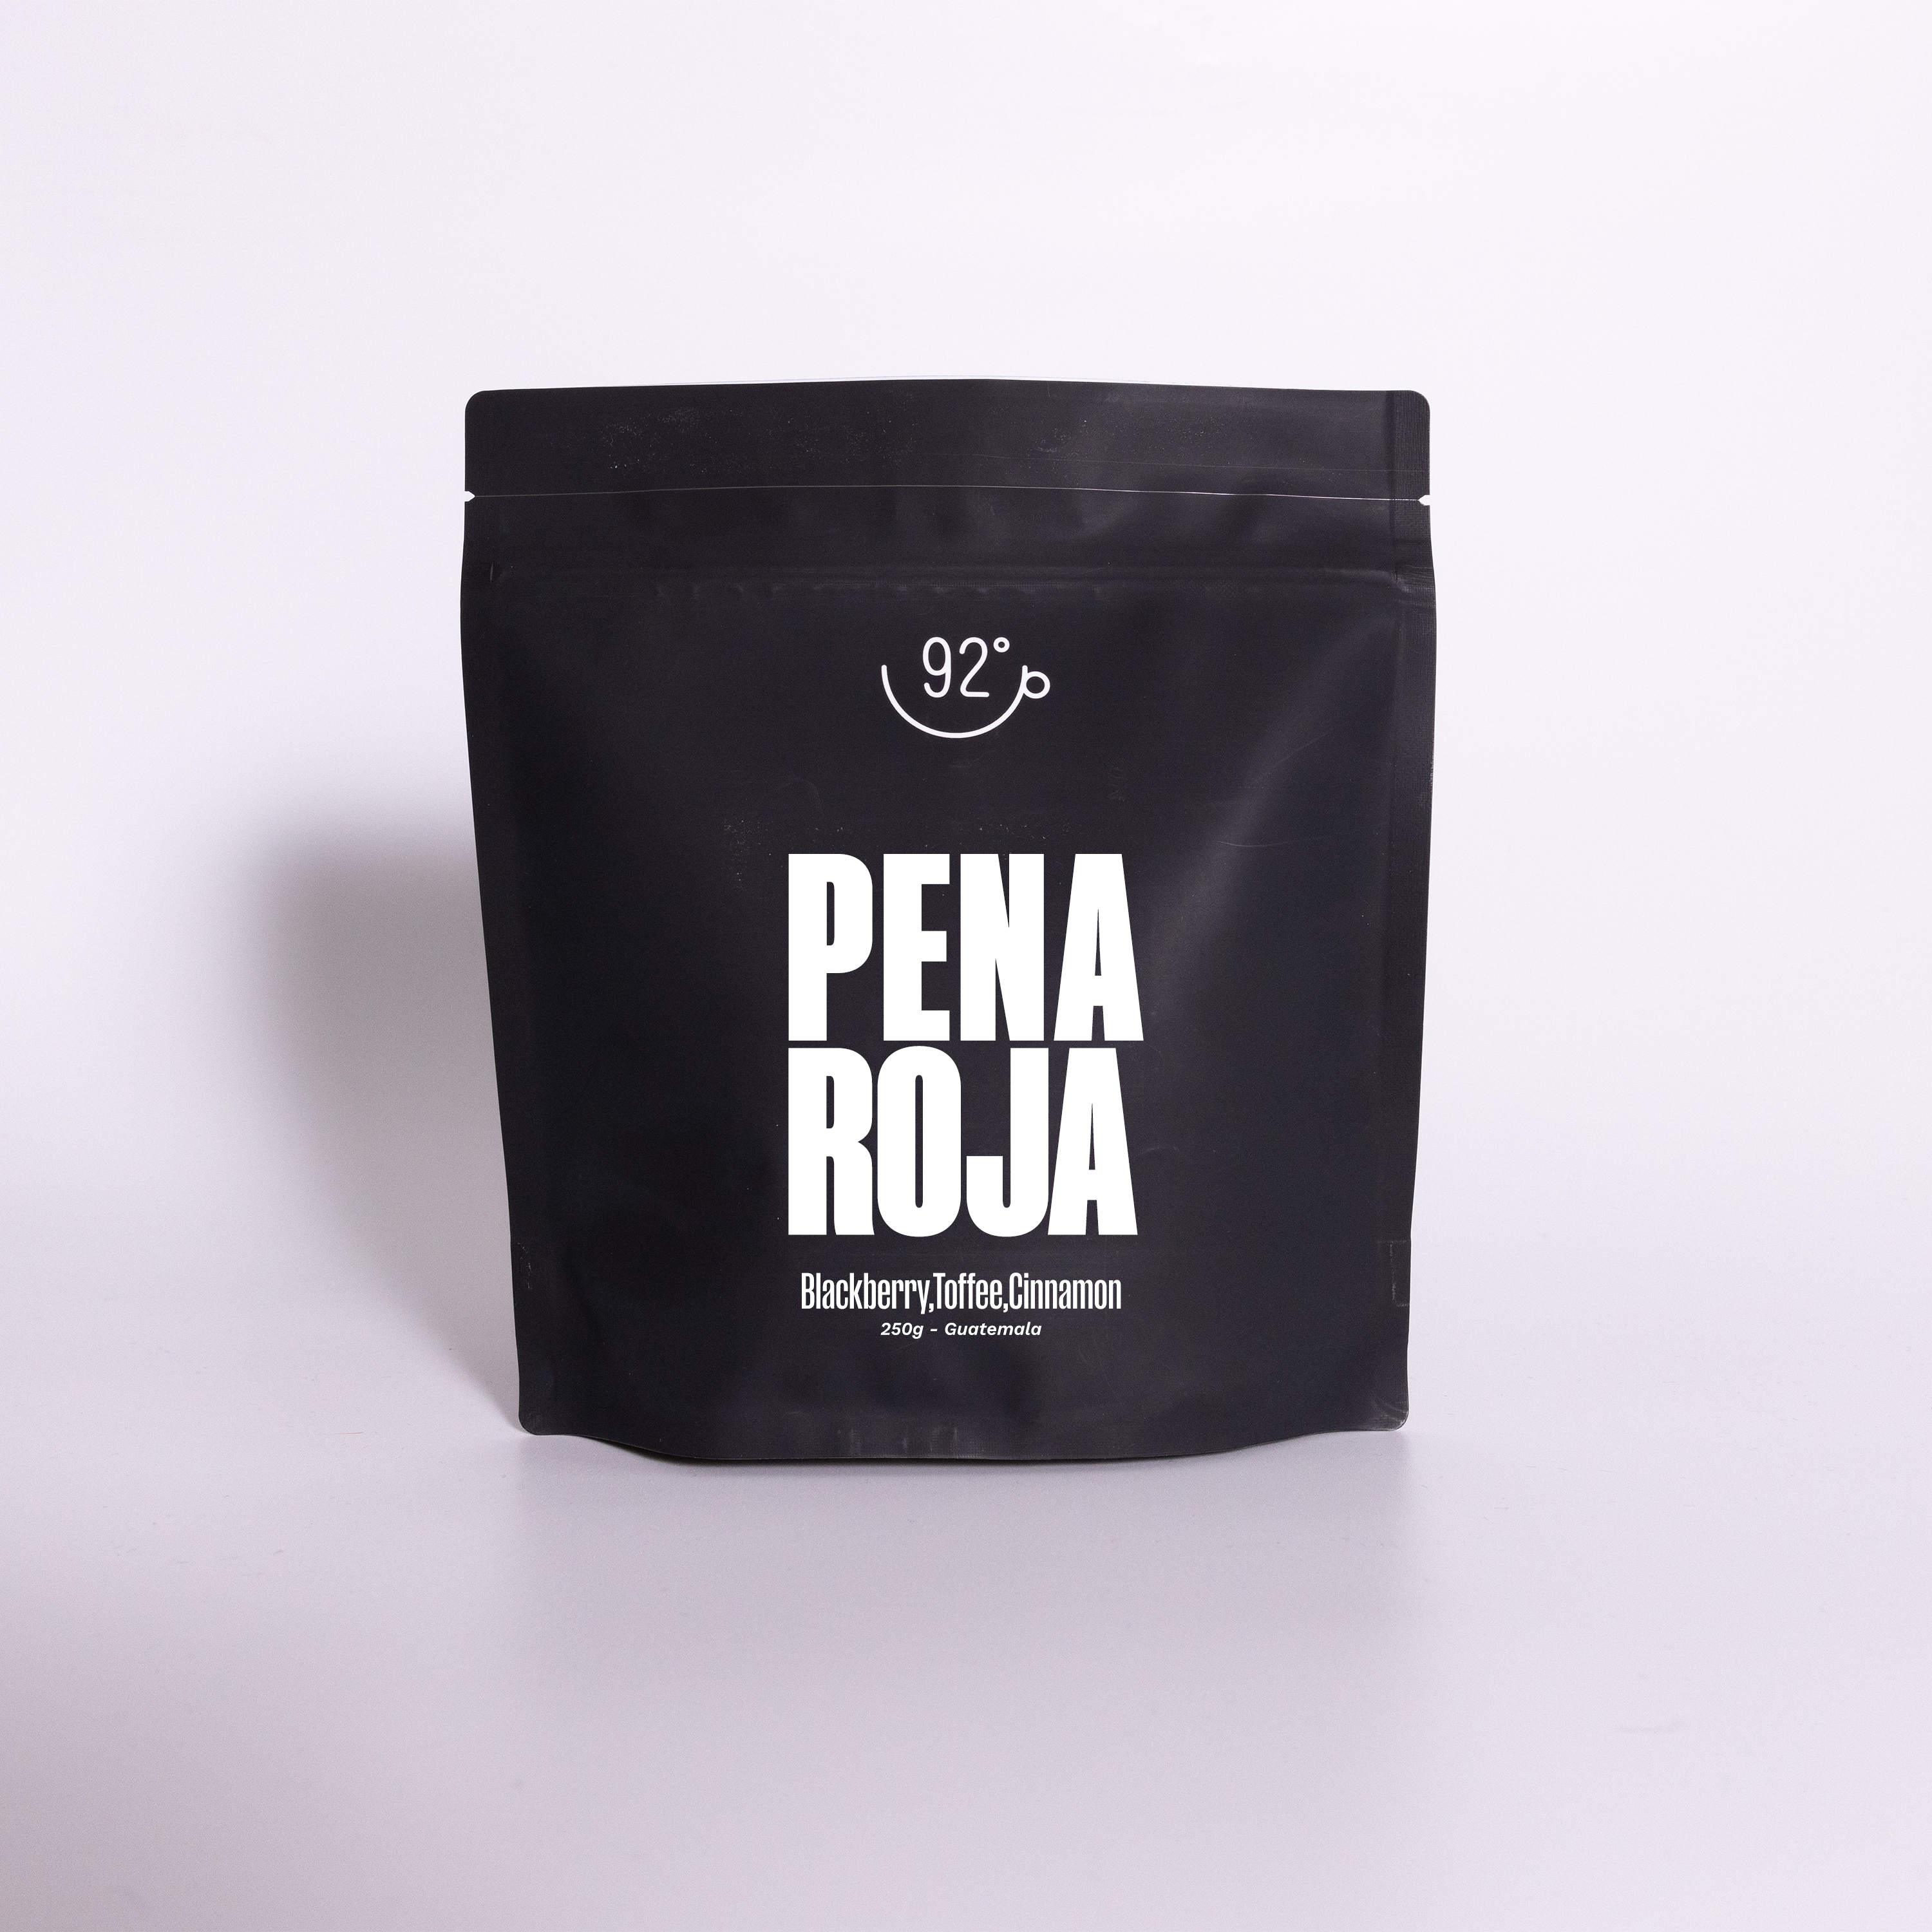 Café en grain Pena Roja du Guatemala, Le café qui fume